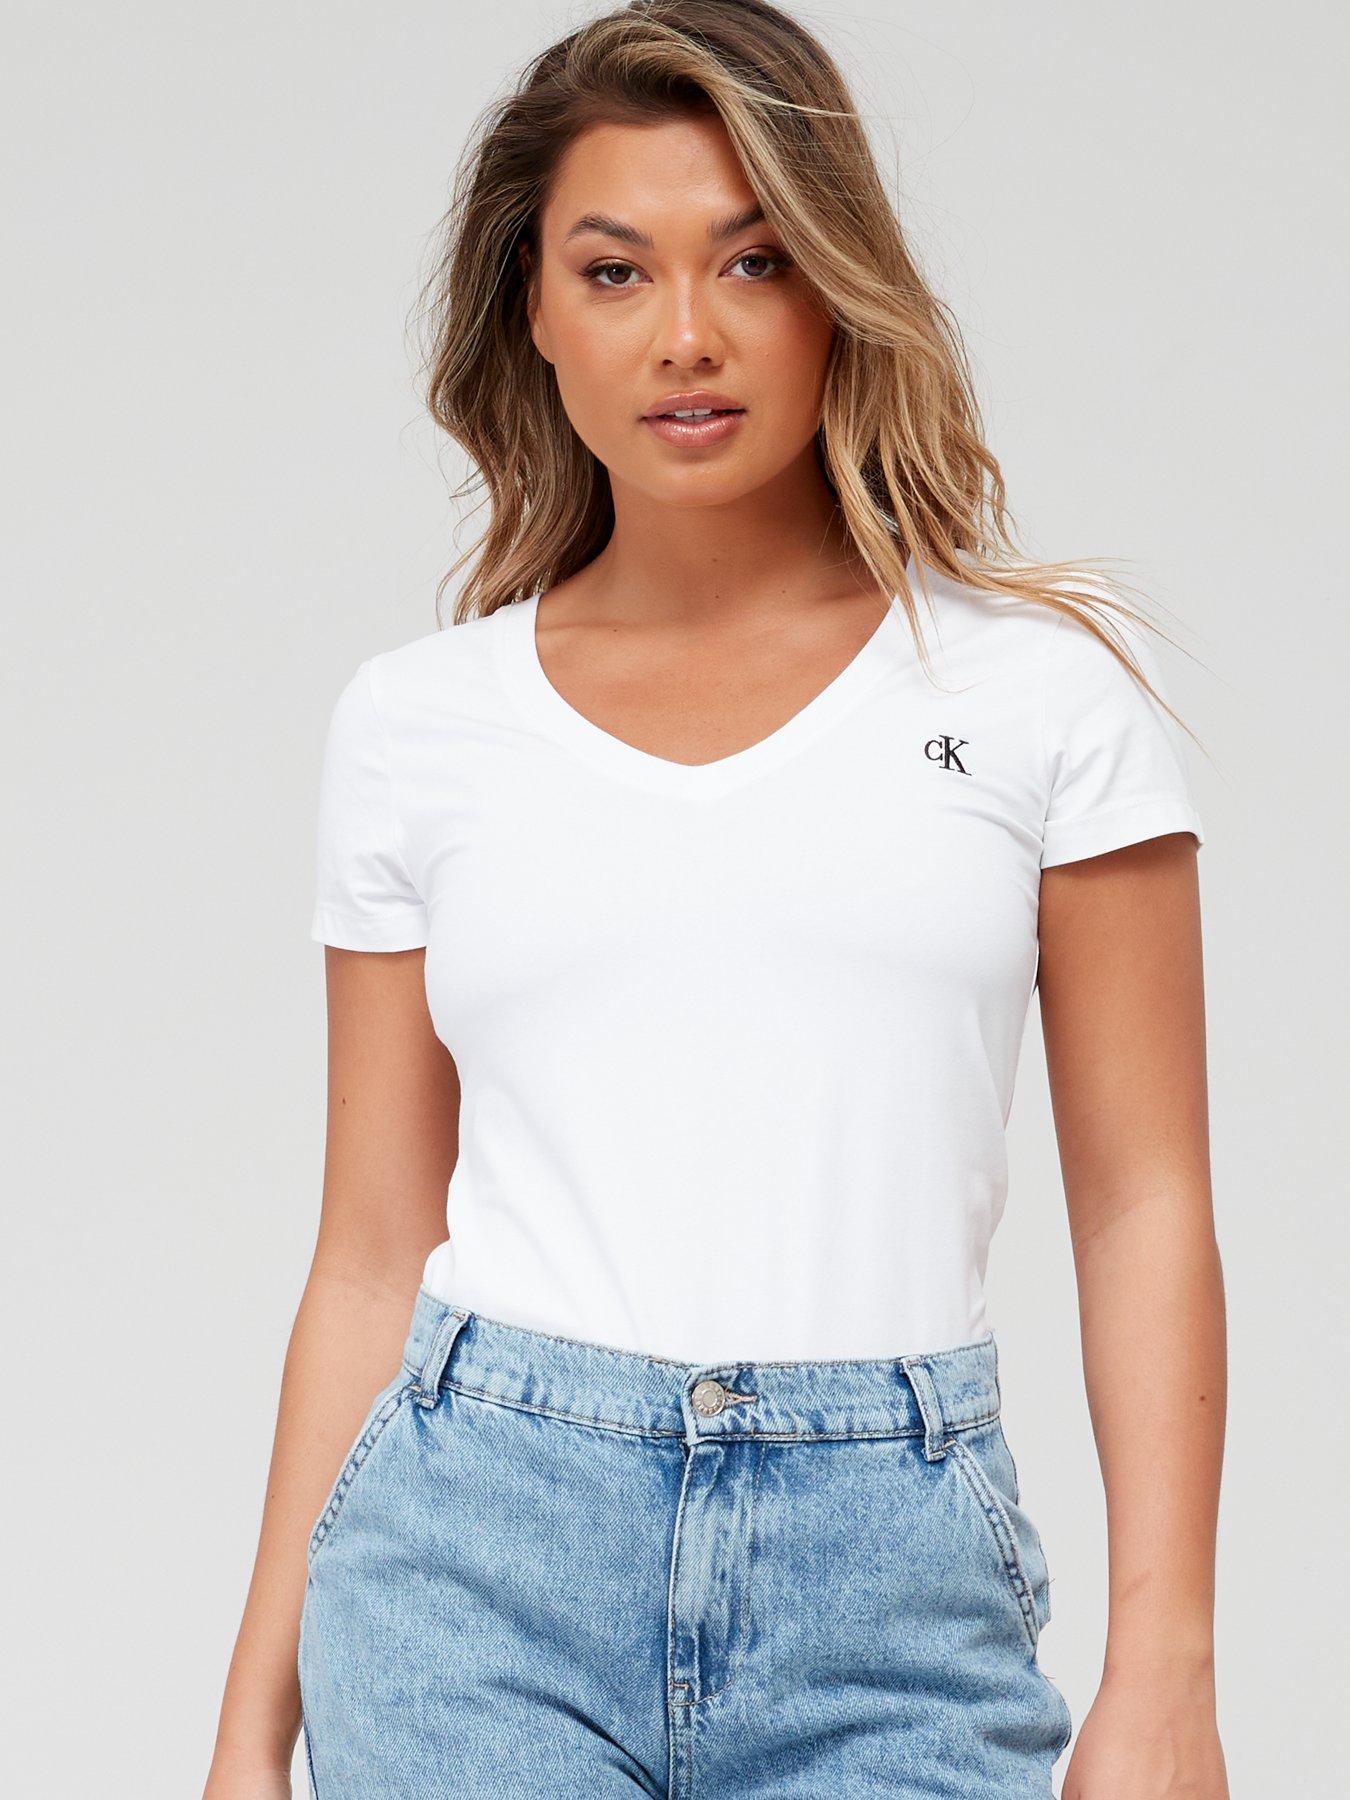 Calvin klein, Tops & t-shirts, Women